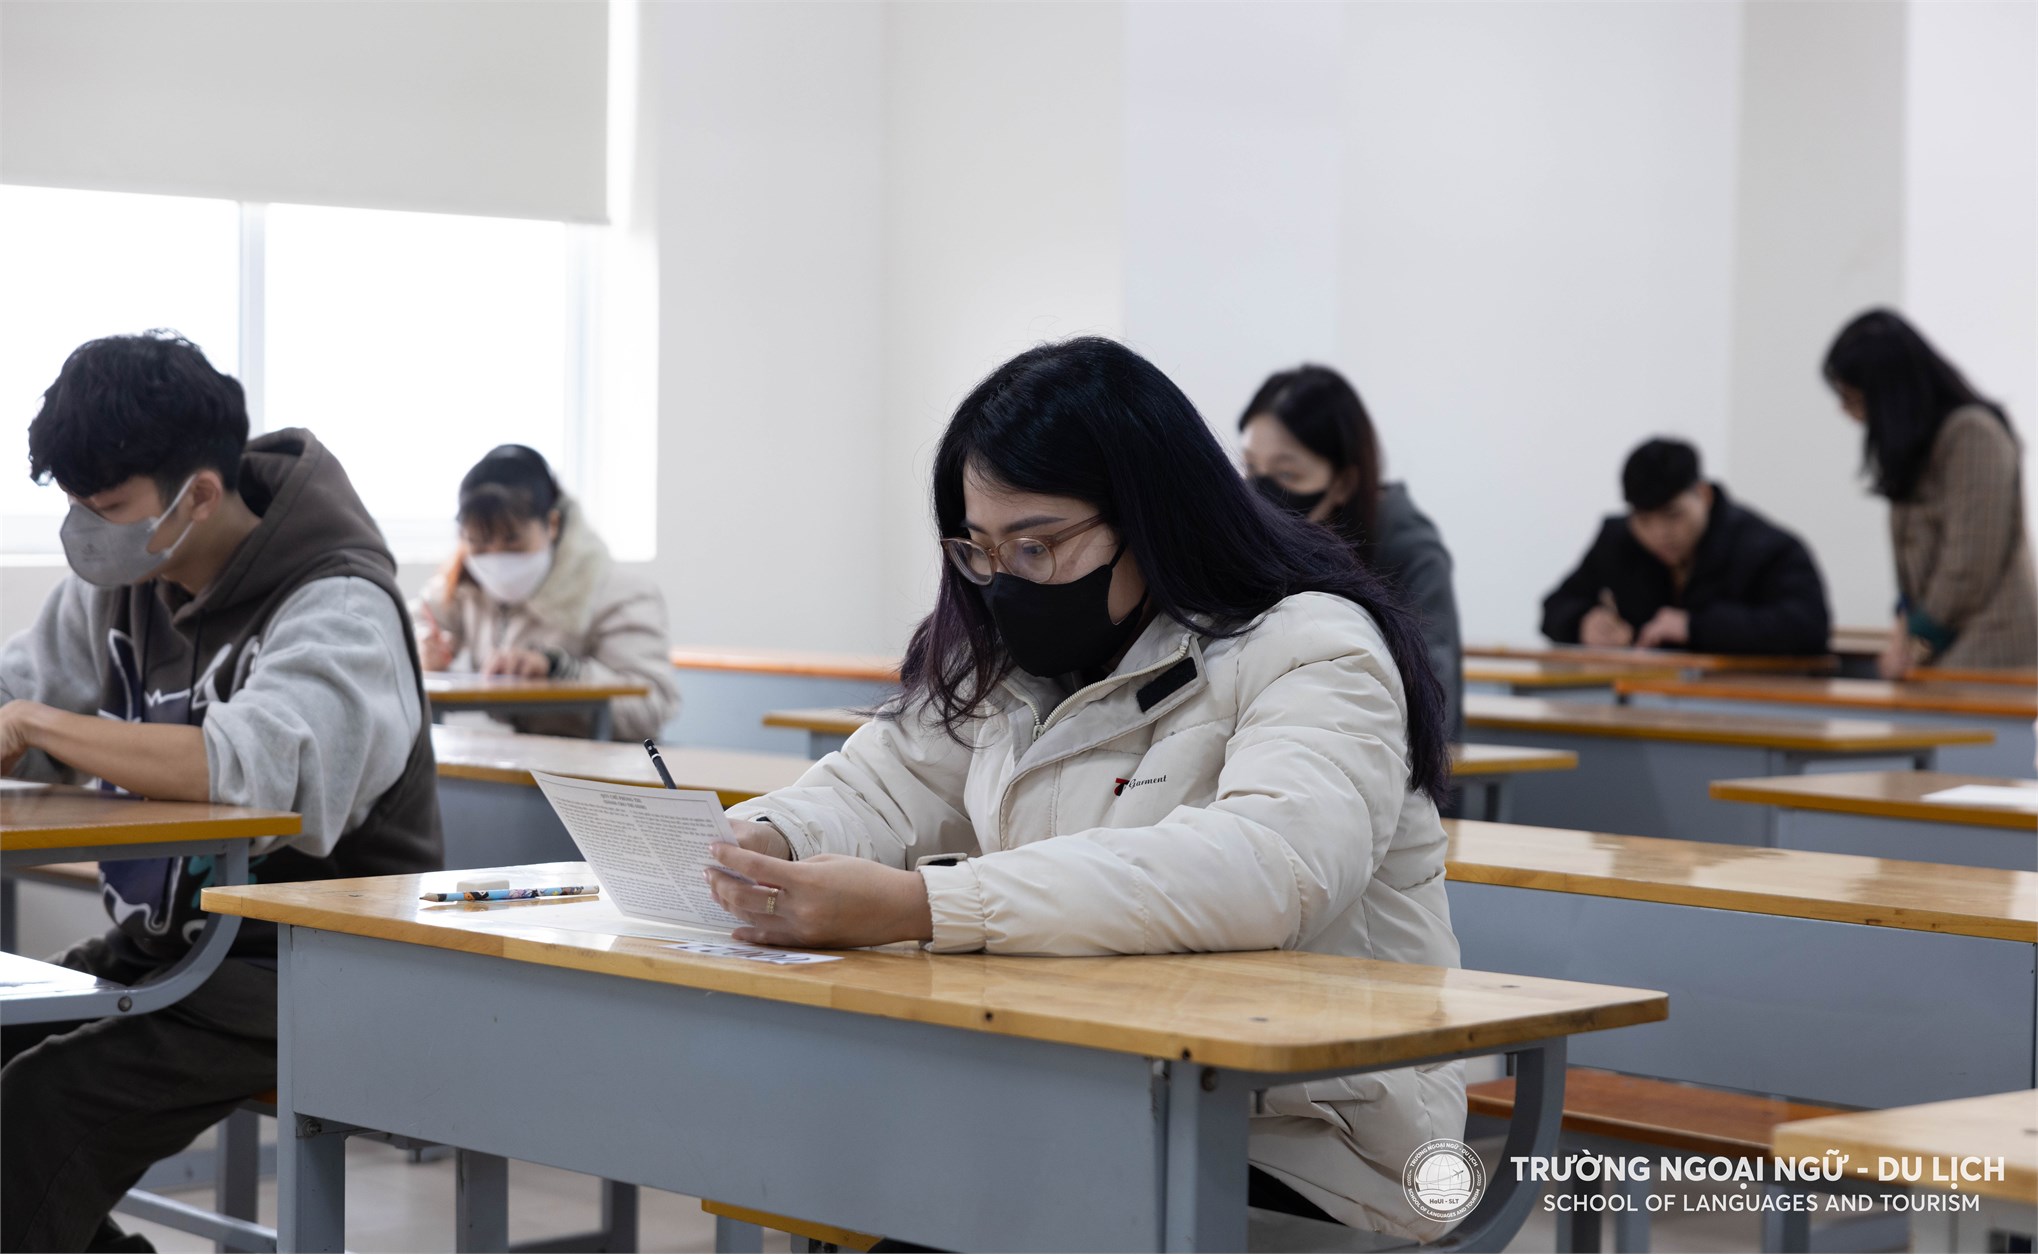 Kỳ thi J.TEST lần đầu tiên được tổ chức tại Trường Đại học Công nghiệp Hà Nội